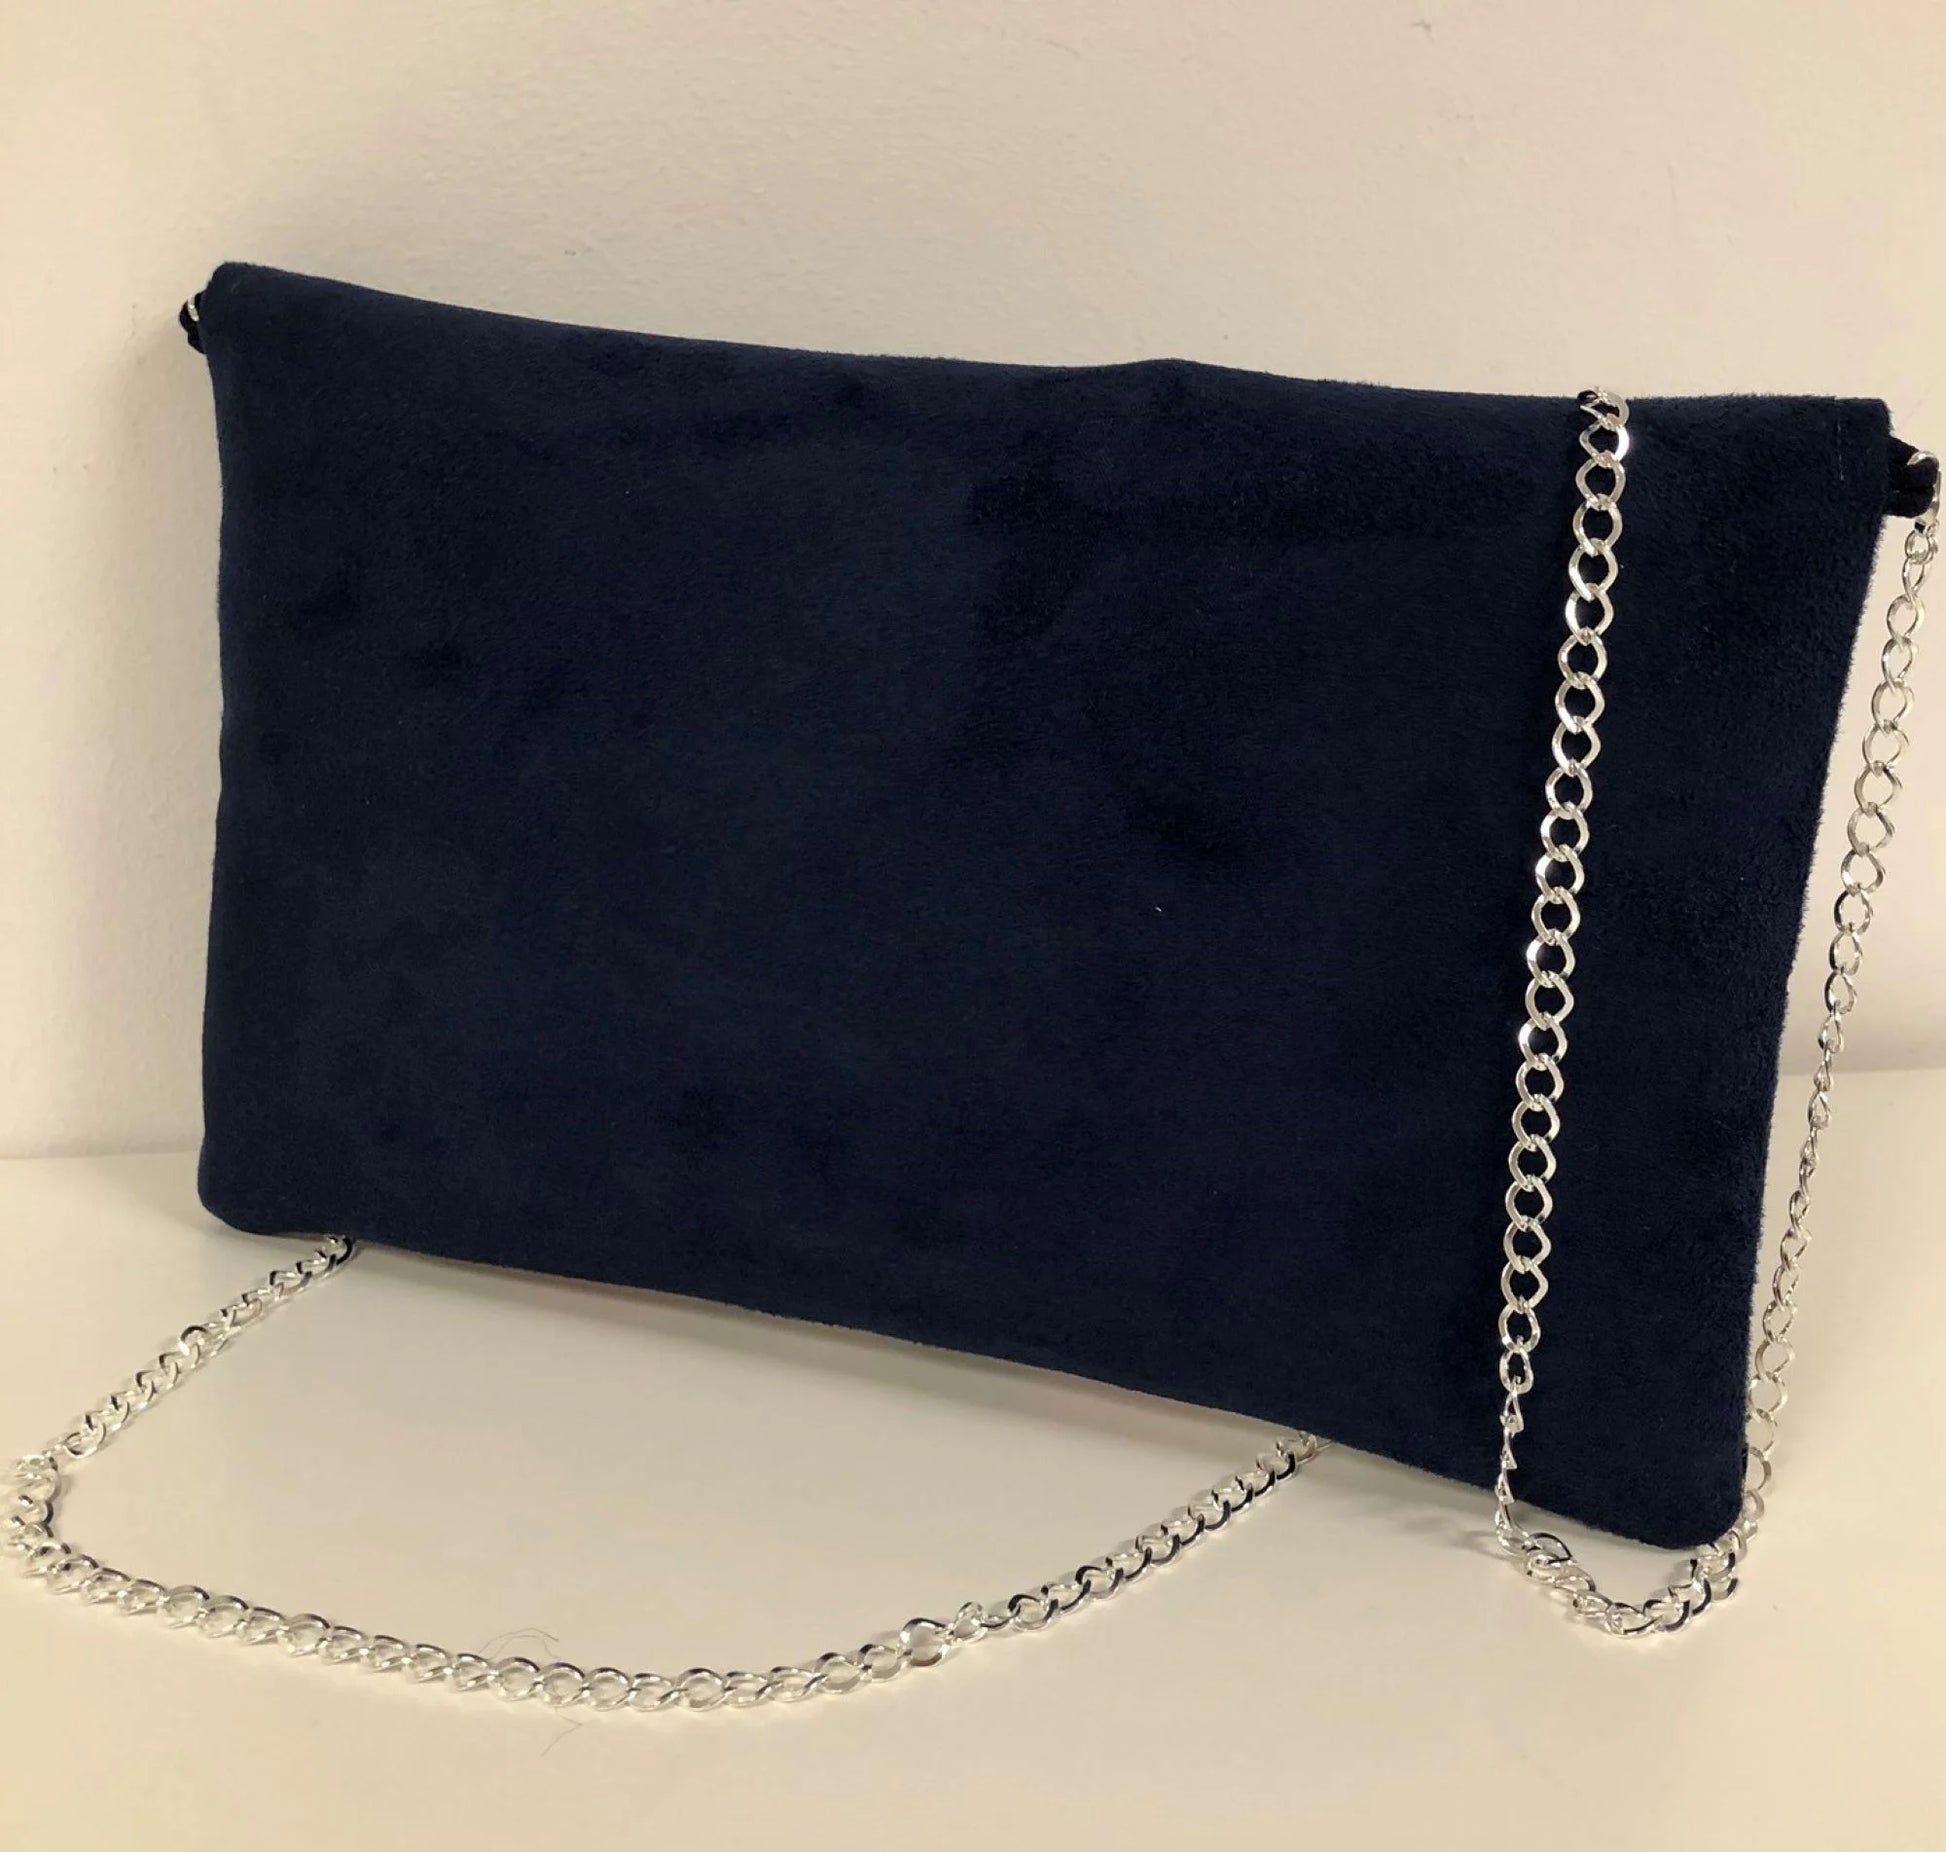 Le dos du sac pochette Isa bleu marine avec tissu japonais fleuri et paillettes argentées.